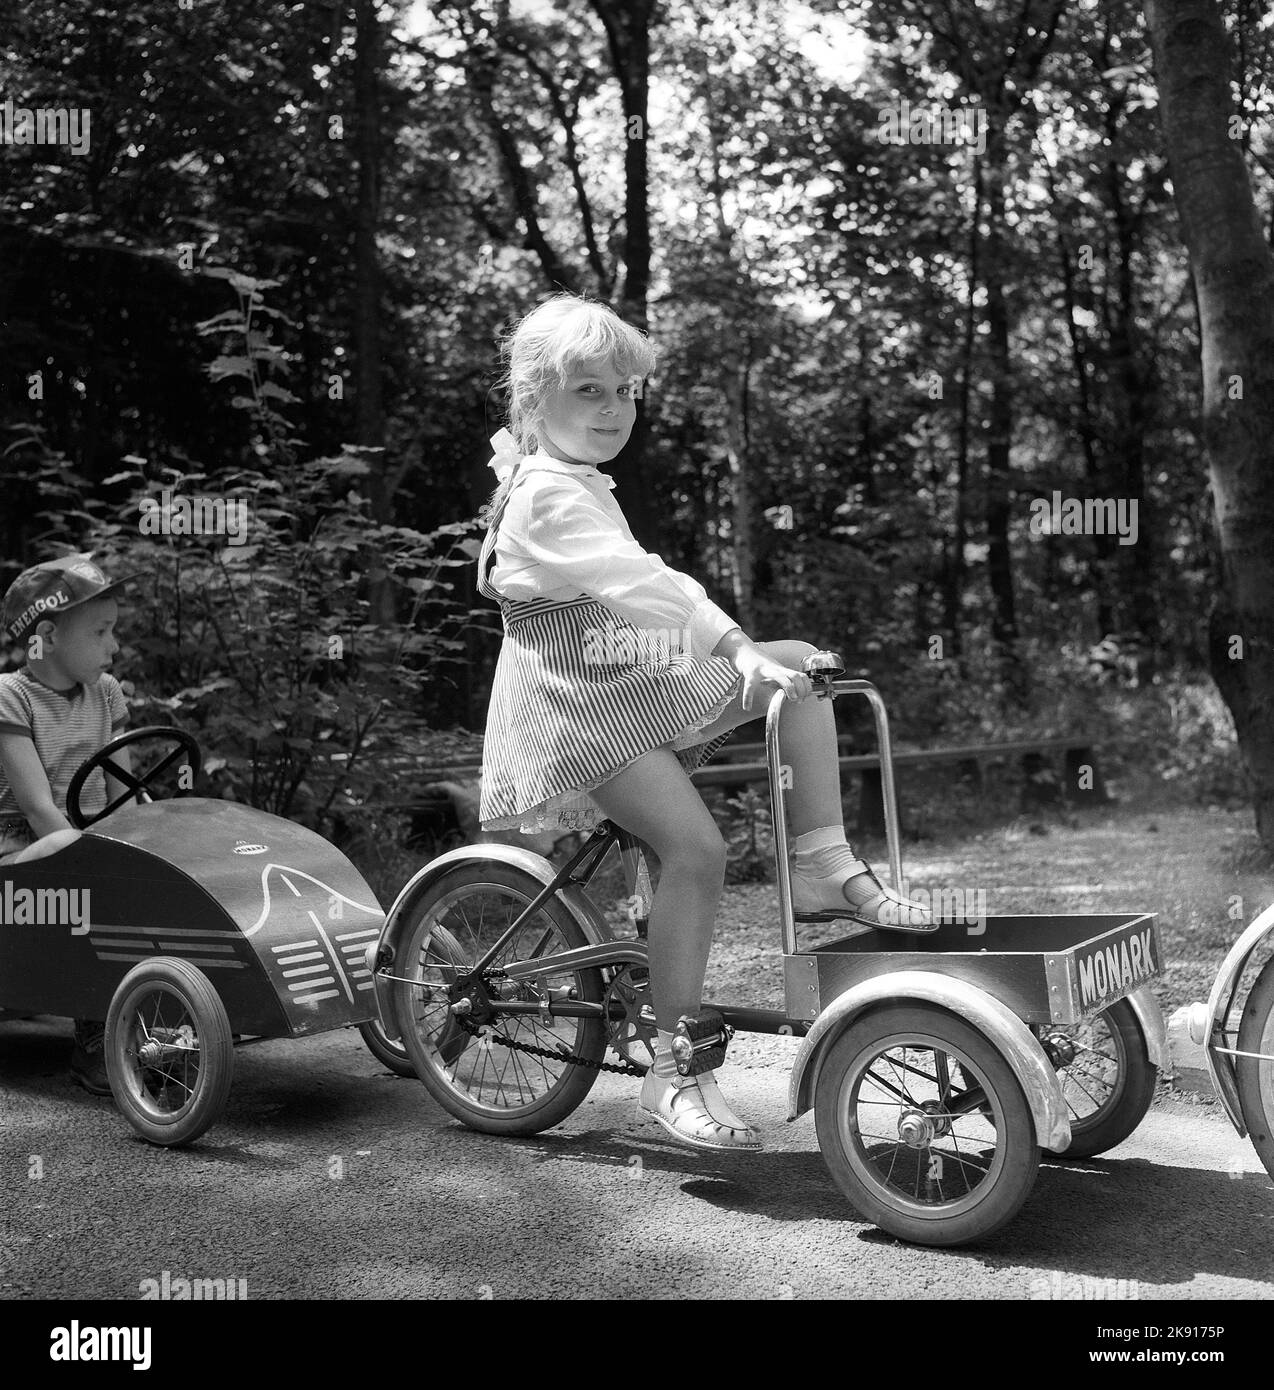 Negli anni '1950s. Una ragazza su un triciclo sta partecipando a una scuola di traffico per bambini dove i bambini imparano a comportarsi nel traffico. Le strade e le case sono più piccole del solito nell'esercizio make-creden-true con lo scopo di prevenire incidenti con i bambini. L'anno è il 1958. Svezia rif CV79 Foto Stock